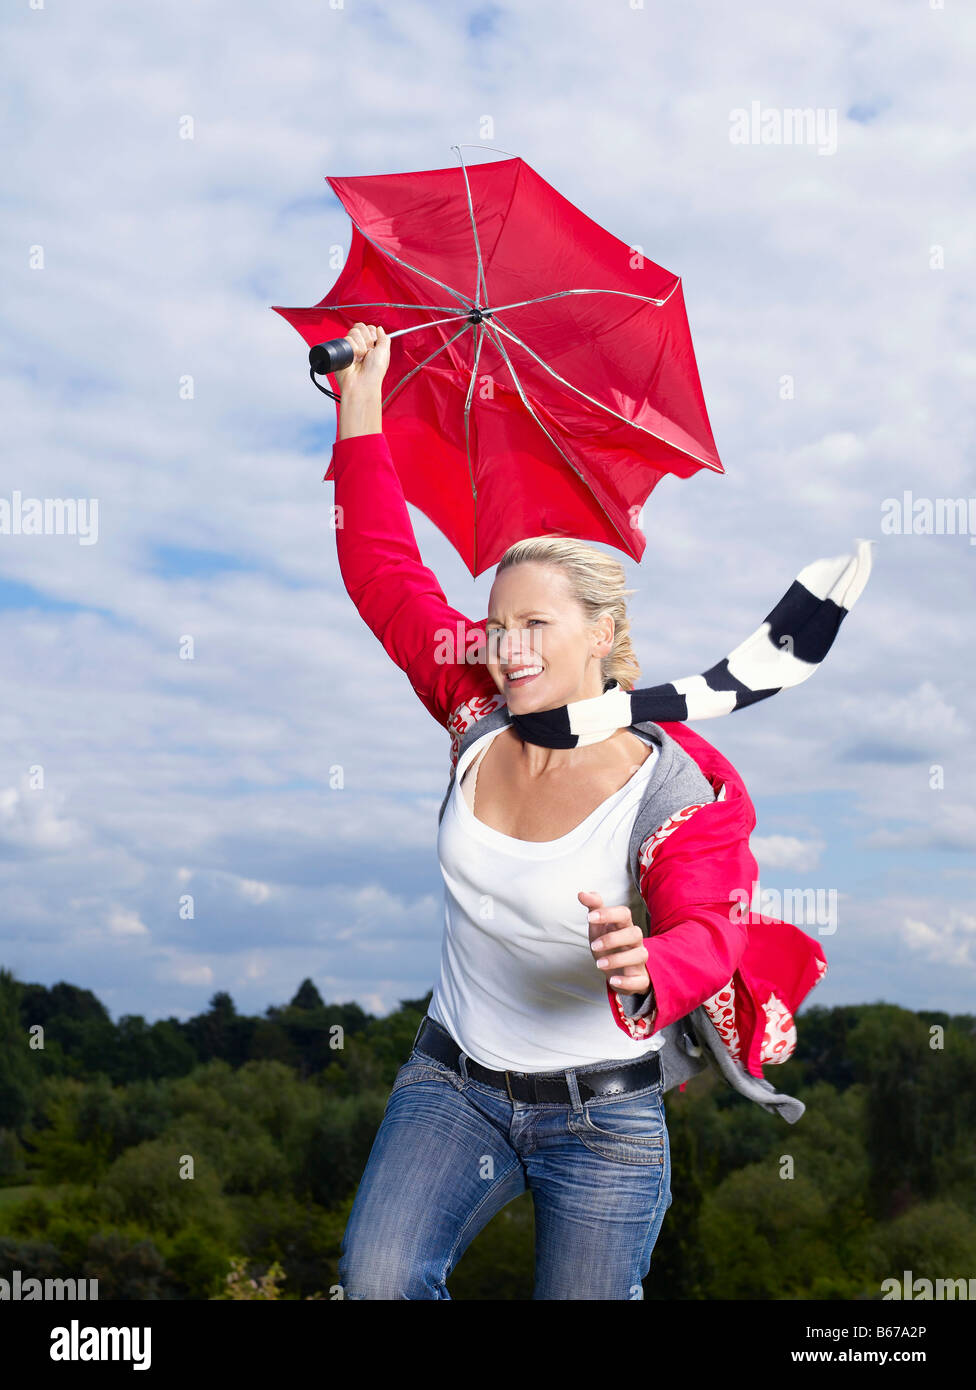 Frau festhalten Regenschirm im wind Stockfoto